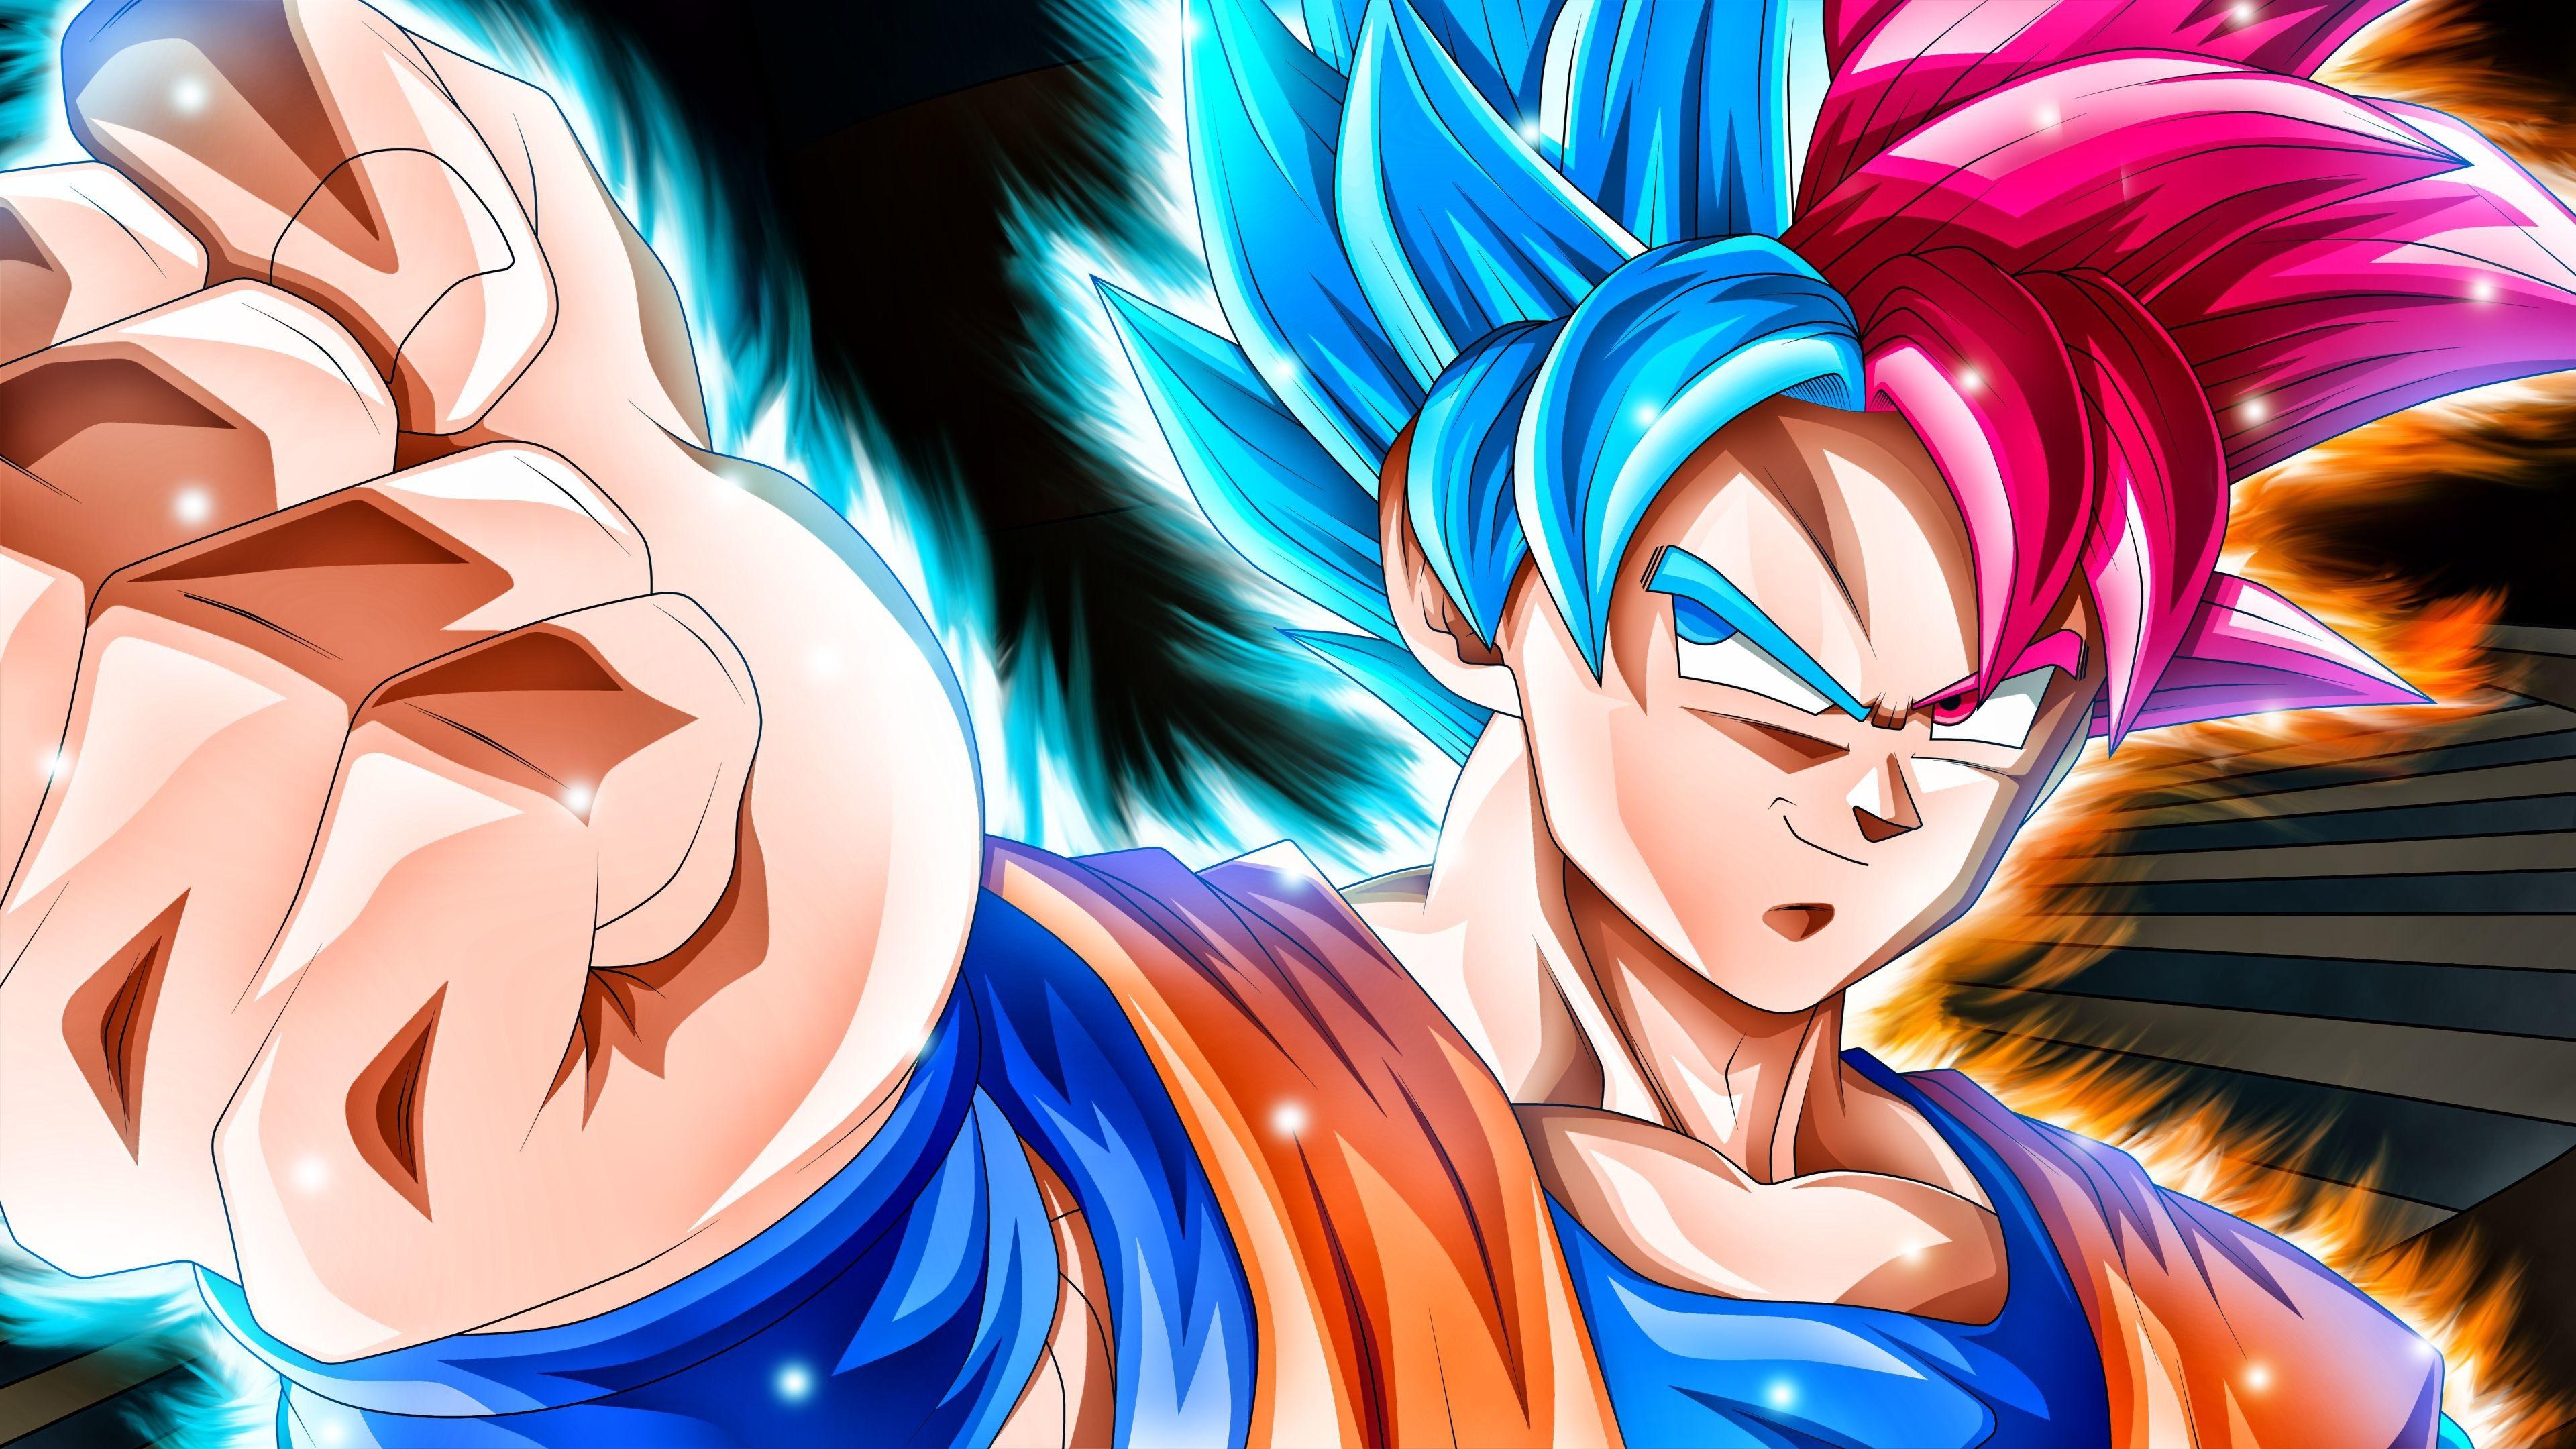 Super Saiyan God Goku Wallpapers - Top Free Super Saiyan God Goku